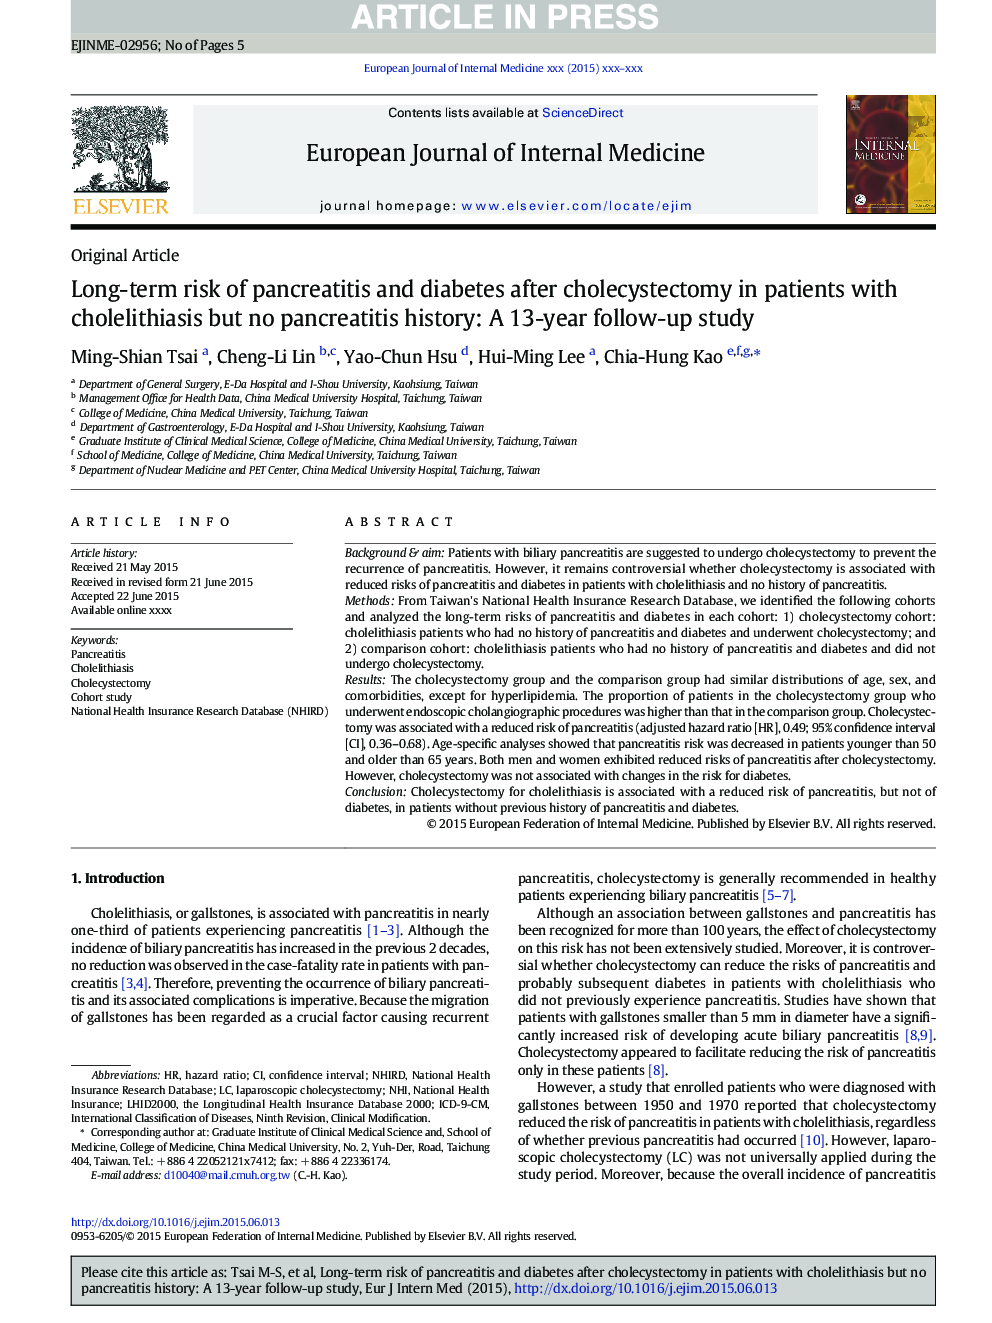 خطر طولانی مدت پانکراتیت و دیابت پس از کولسیستکتومی در بیماران مبتلا به کولیتیازیس اما تاریخ پانکراتیت: یک مطالعه 13 ساله 